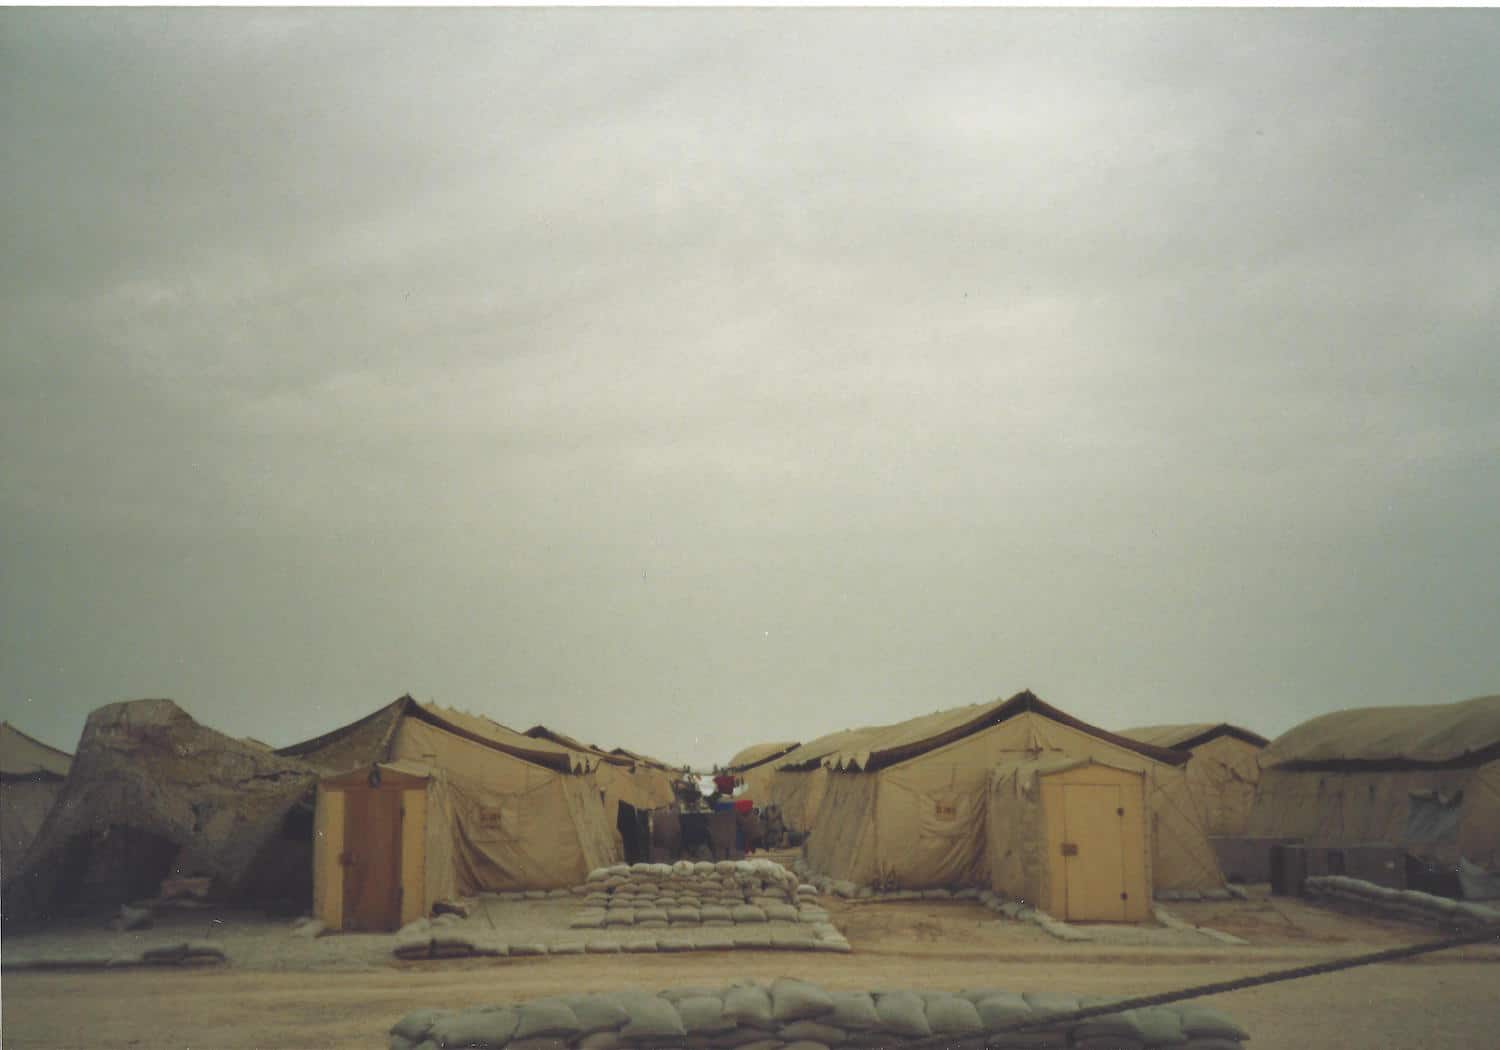 military base set up in saudi arabia